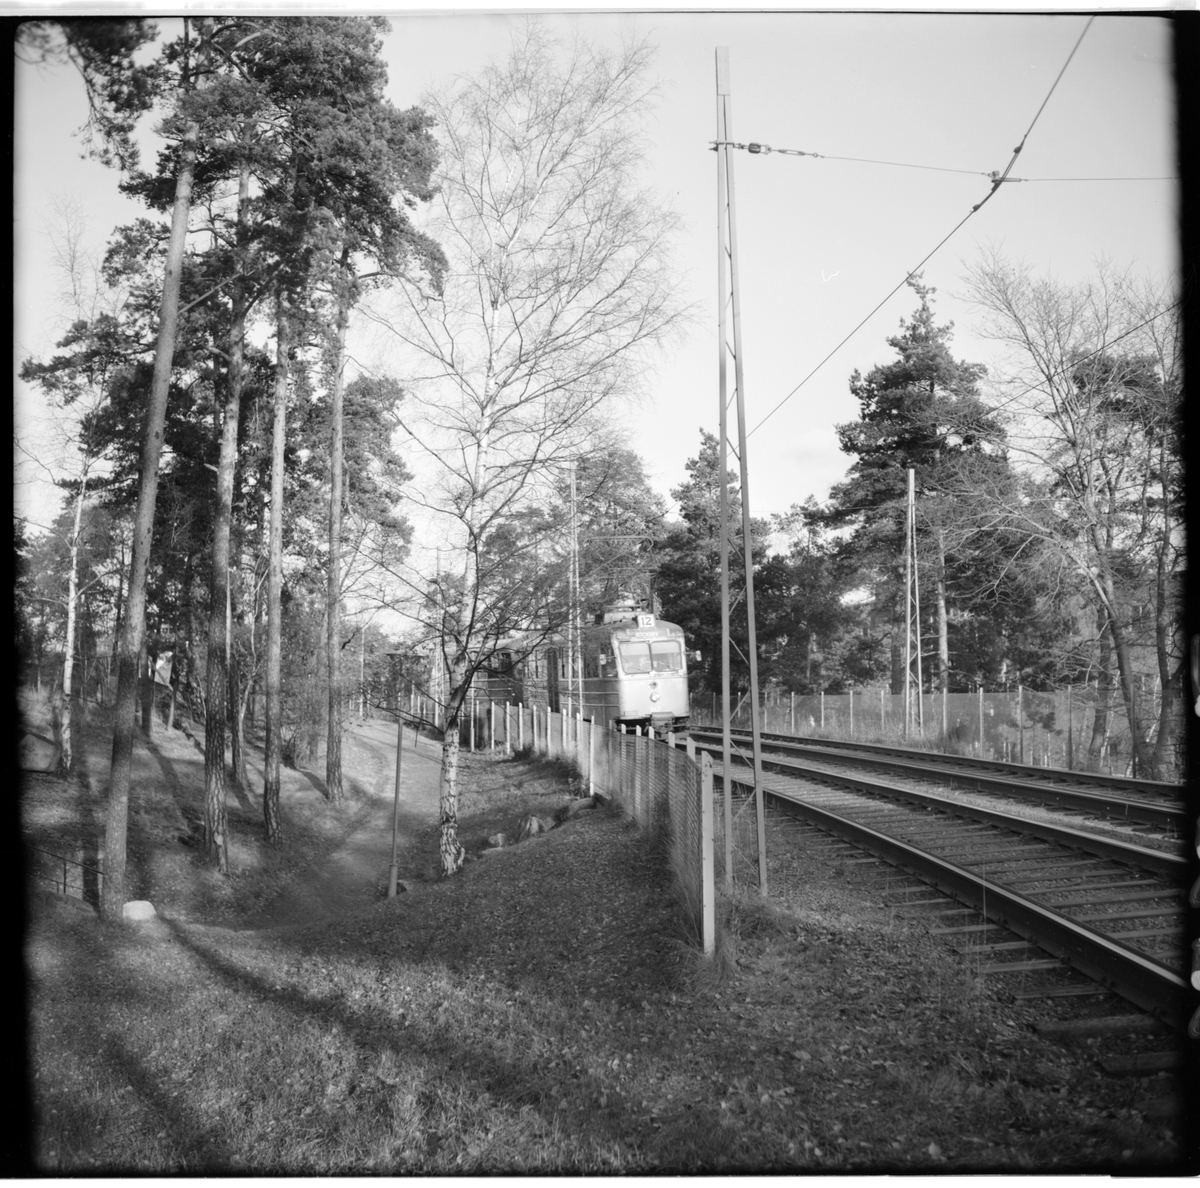 Aktiebolaget Stockholms Spårvägar, SS A24 367 "ängbyvagn" linje 12 Nockeby vid Trollberget i riktning mot Nockeby. Gångtunnel.